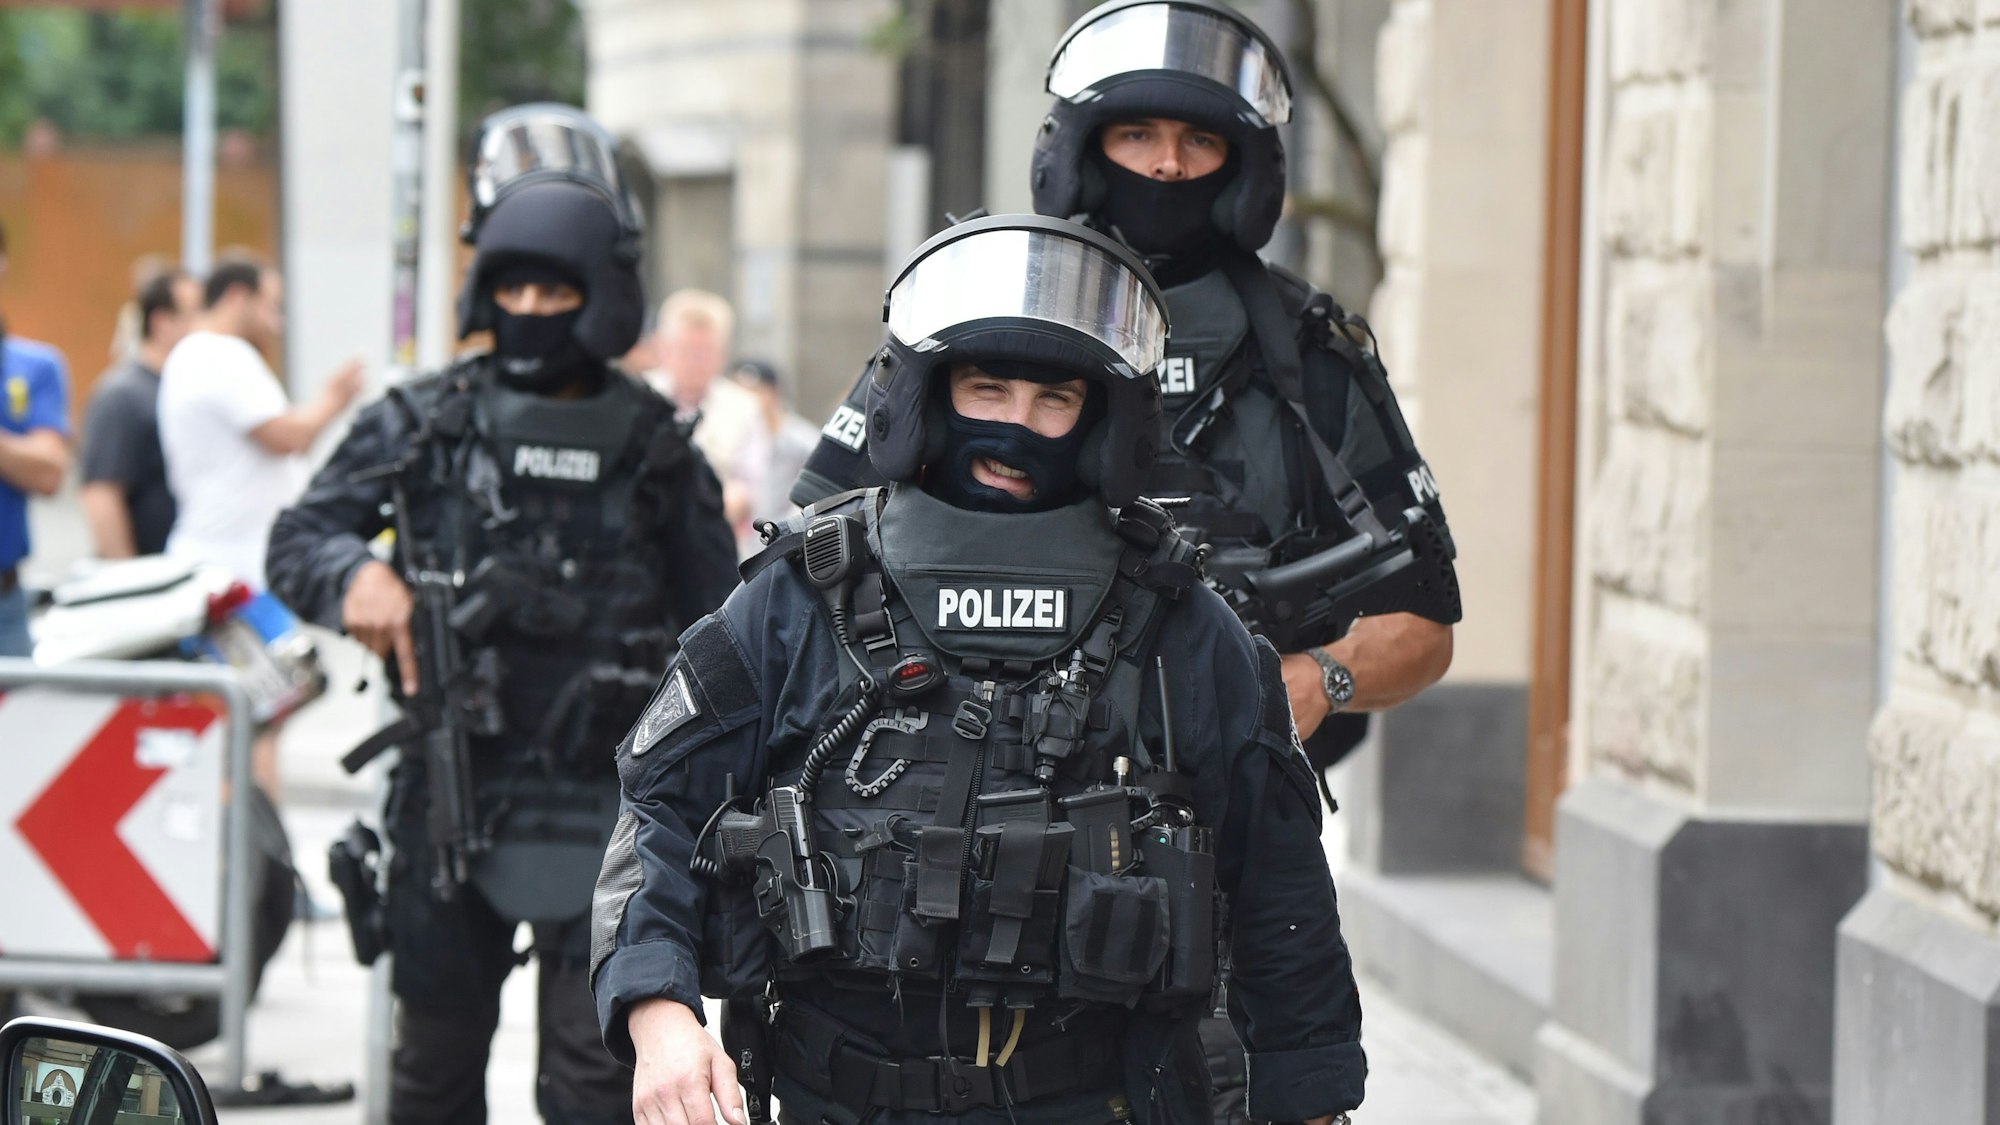 ARCHIV - Beamte eines Spezialeinsatzkommandos (SEK) der Polizei laufen am 11.06.2015 bei einem Einsatz durch das Bahnhofsgebiet in Frankfurt am Main (Hessen).